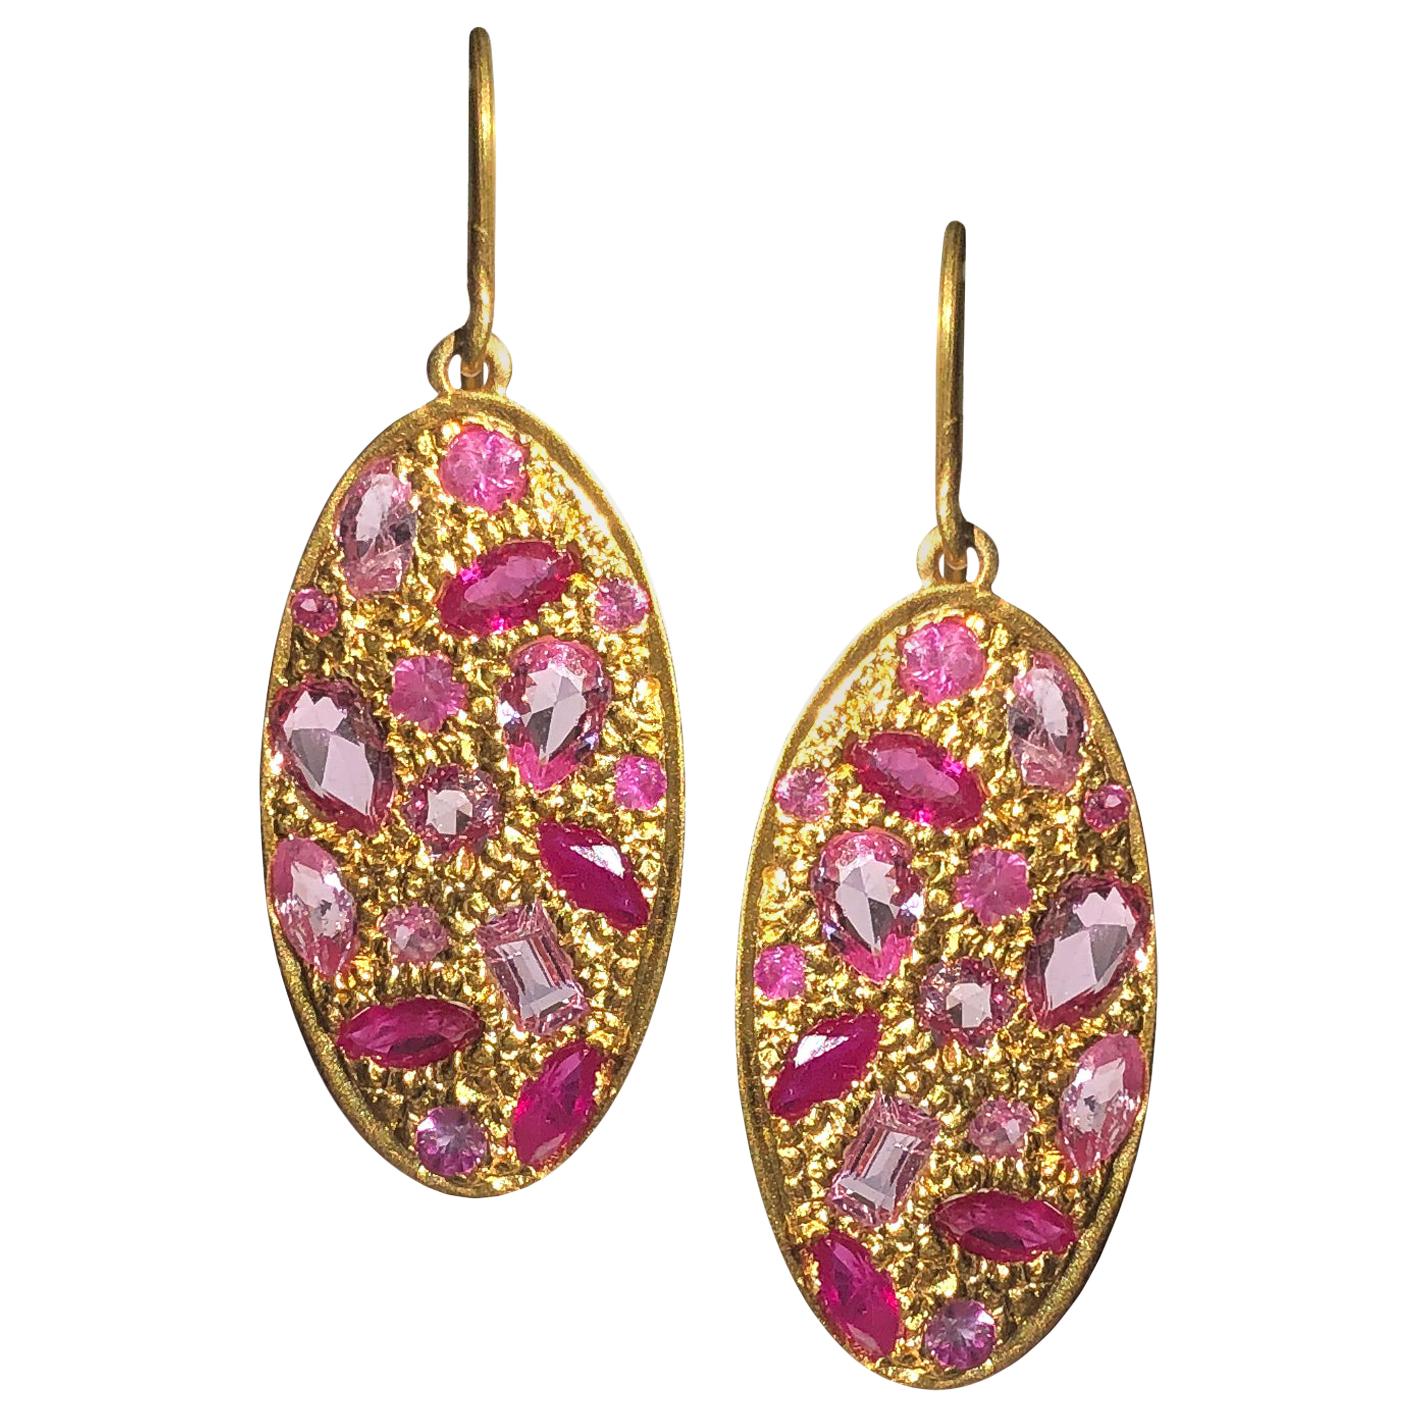 2.72 Carat Pink Sapphire Gold Oval Earrings by Lauren Harper